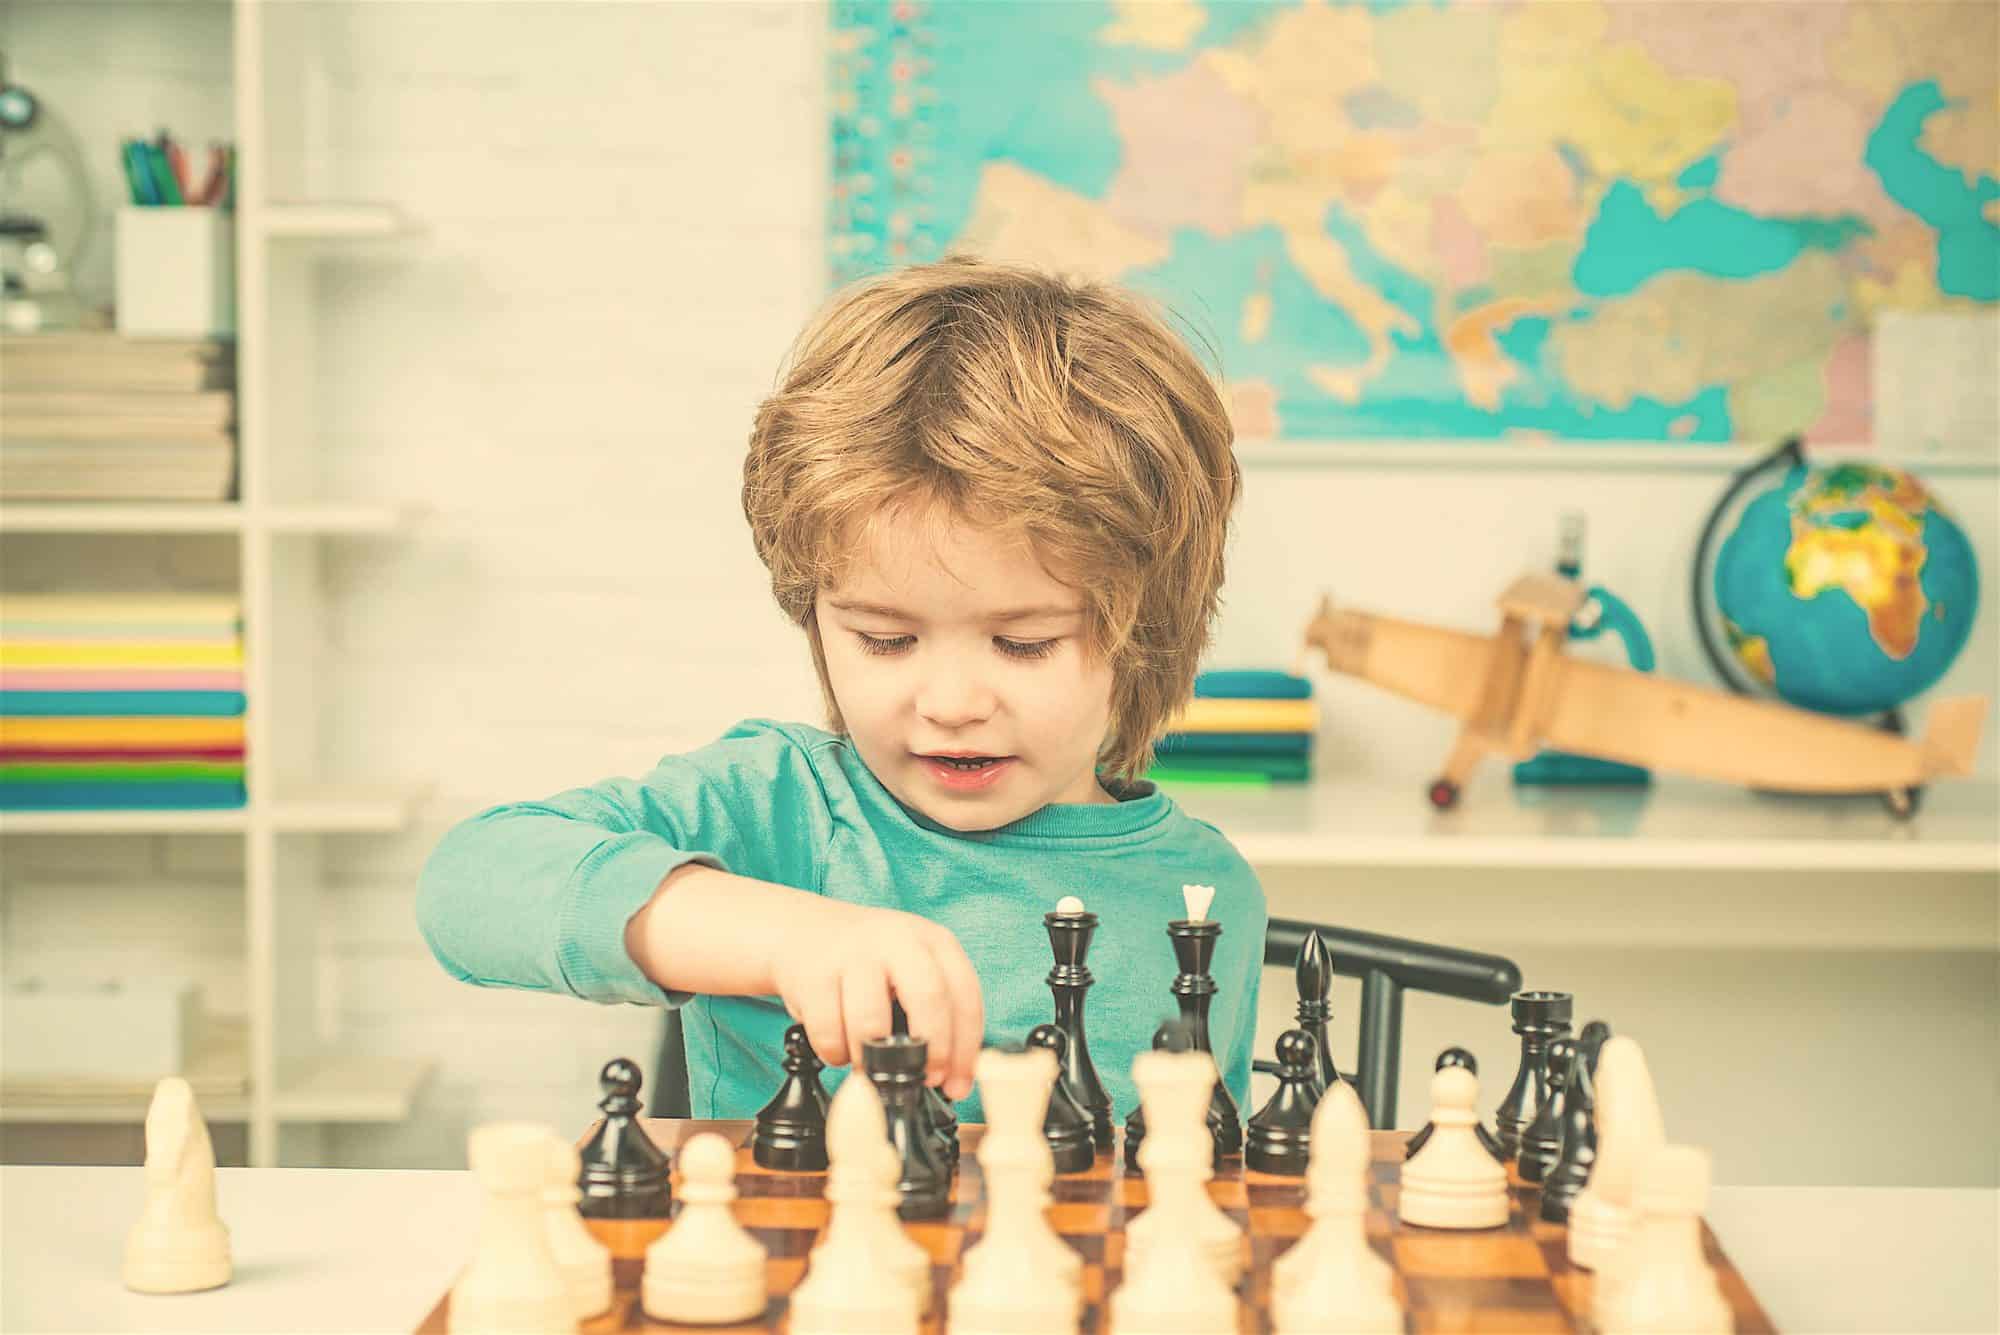 Aprende con Rey, un juego online de ajedrez para niños